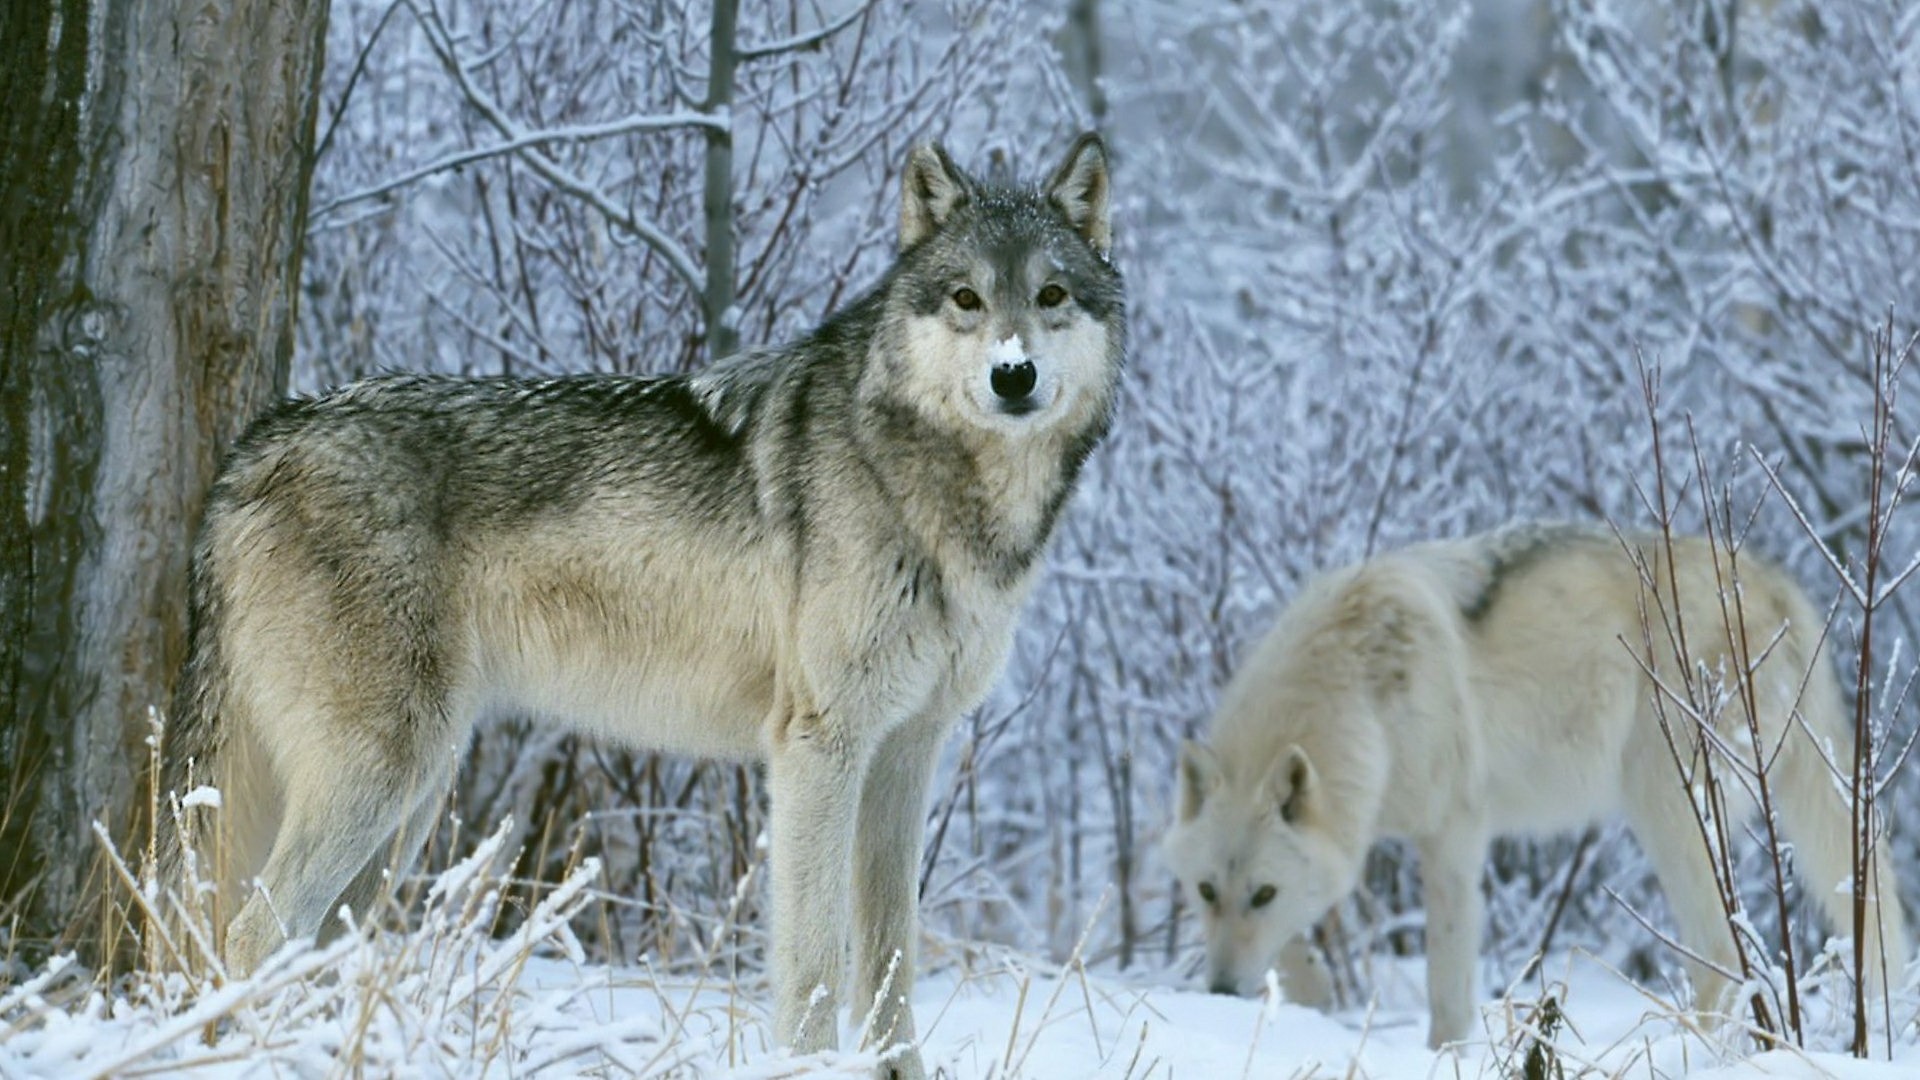 1920x1080 Wolf in the snowy wilderness ðºâ wallpaper